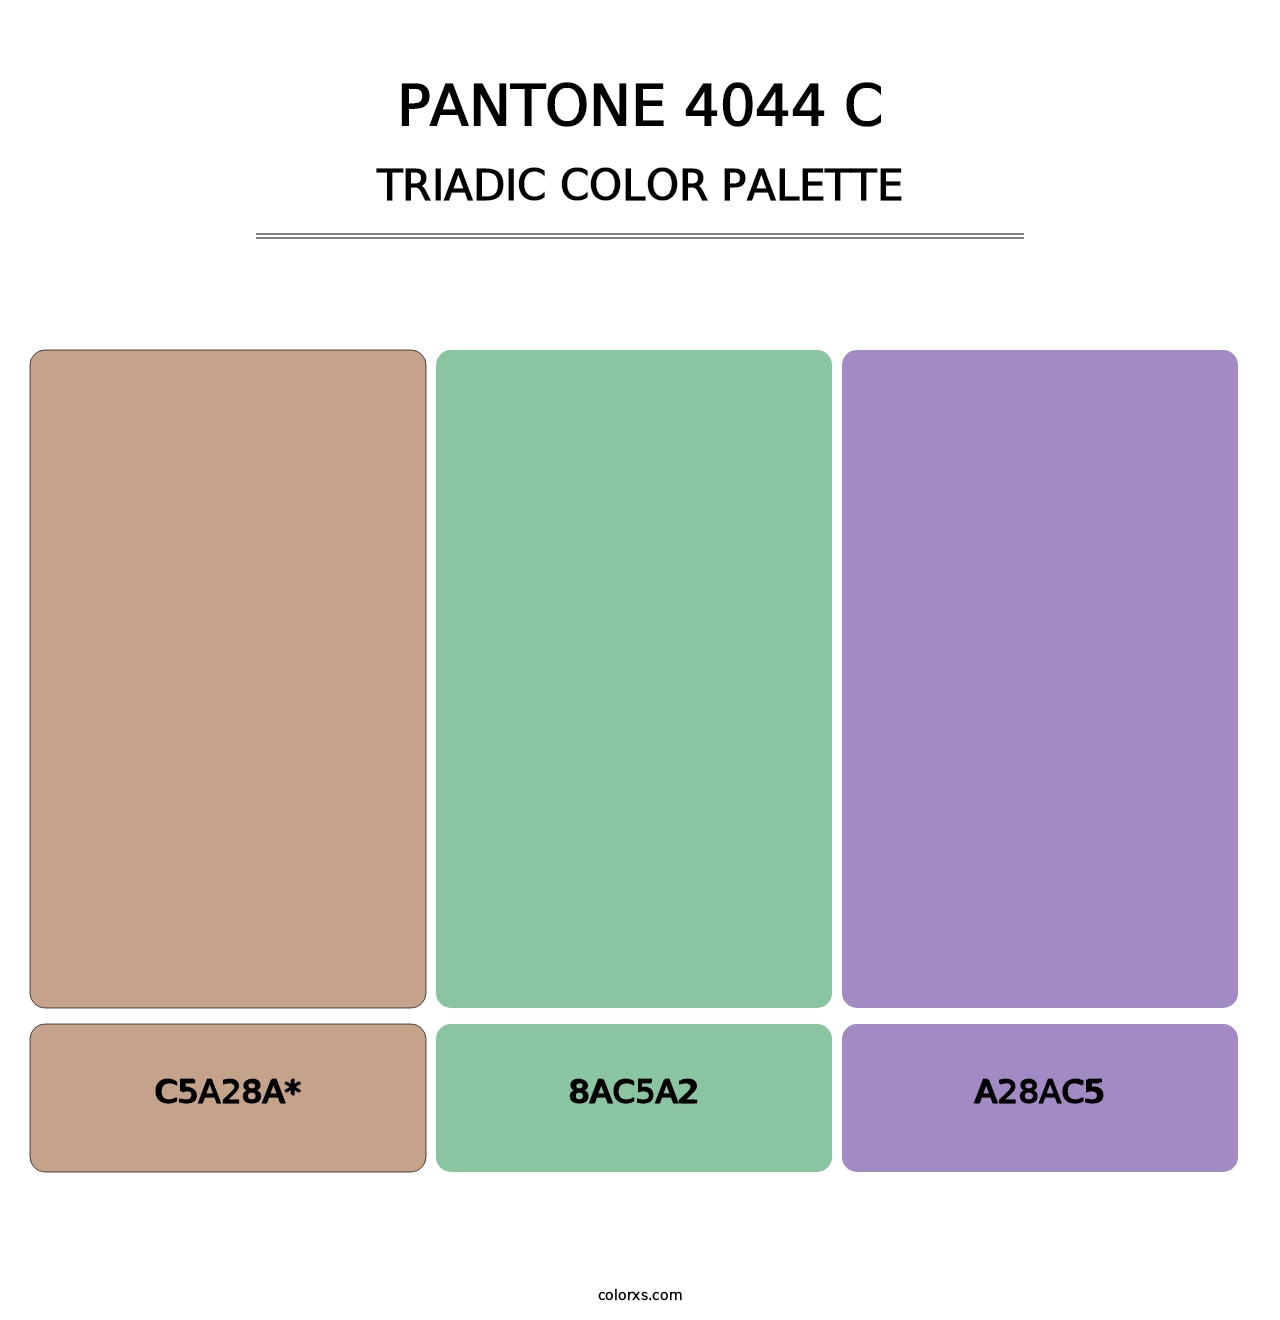 PANTONE 4044 C - Triadic Color Palette